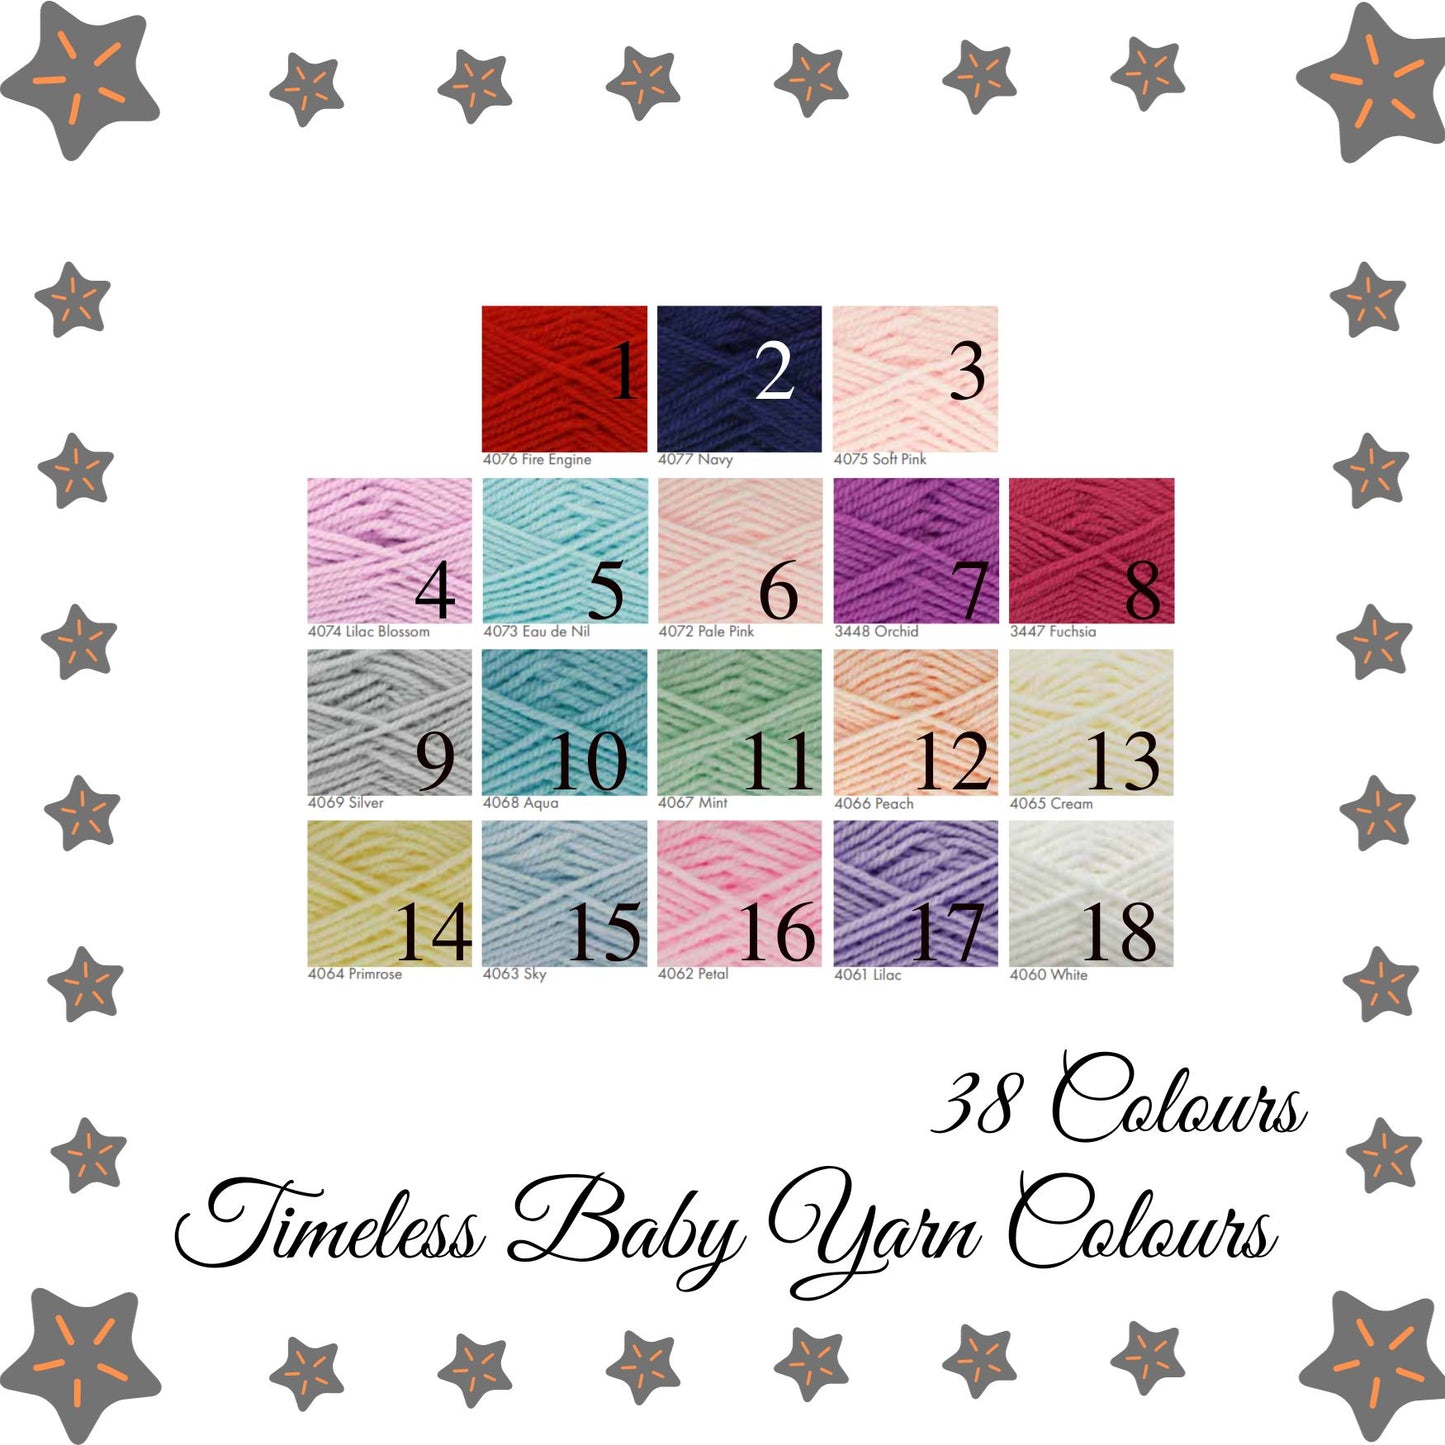 Knitted Baby Turbans | Handmade Baby Turban UK